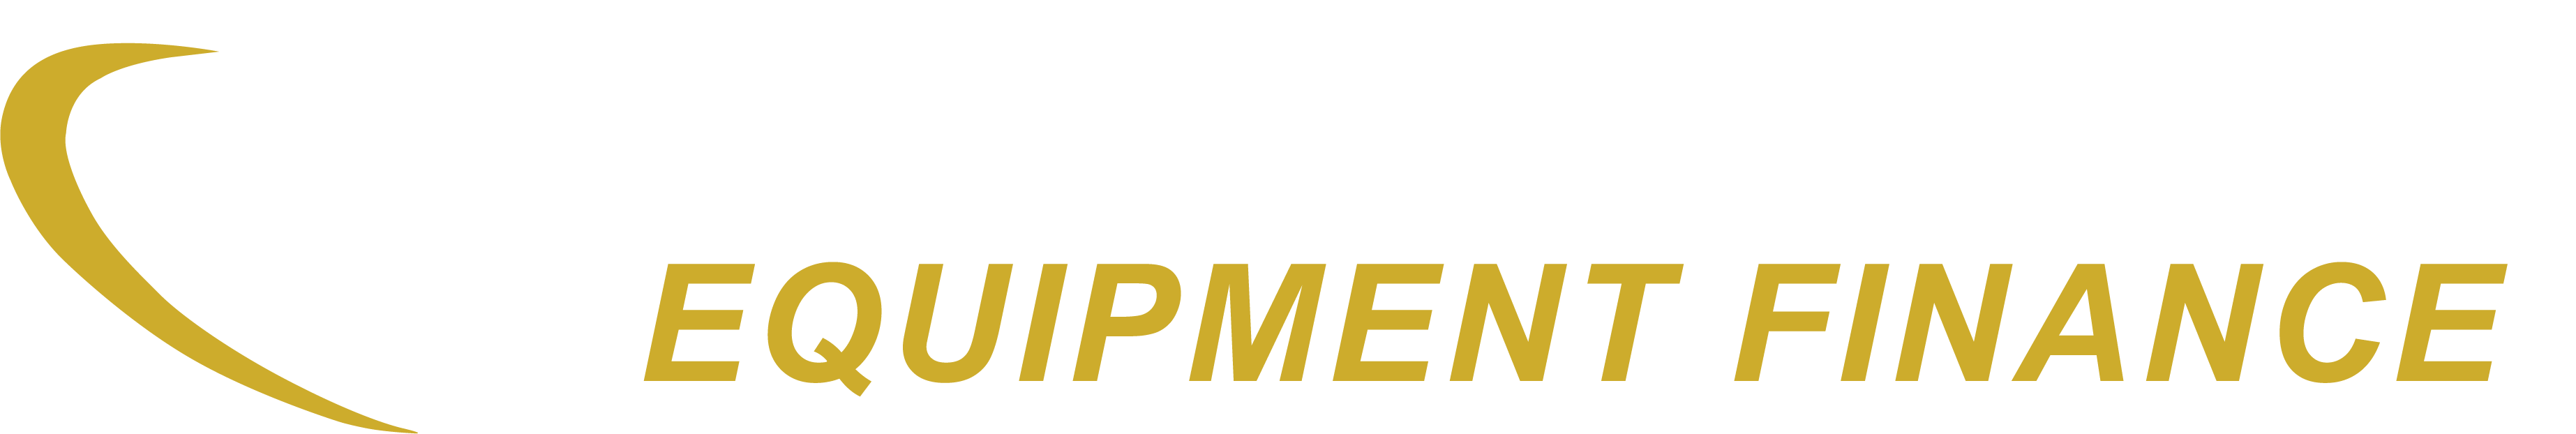 Compass Equipment Finance logo